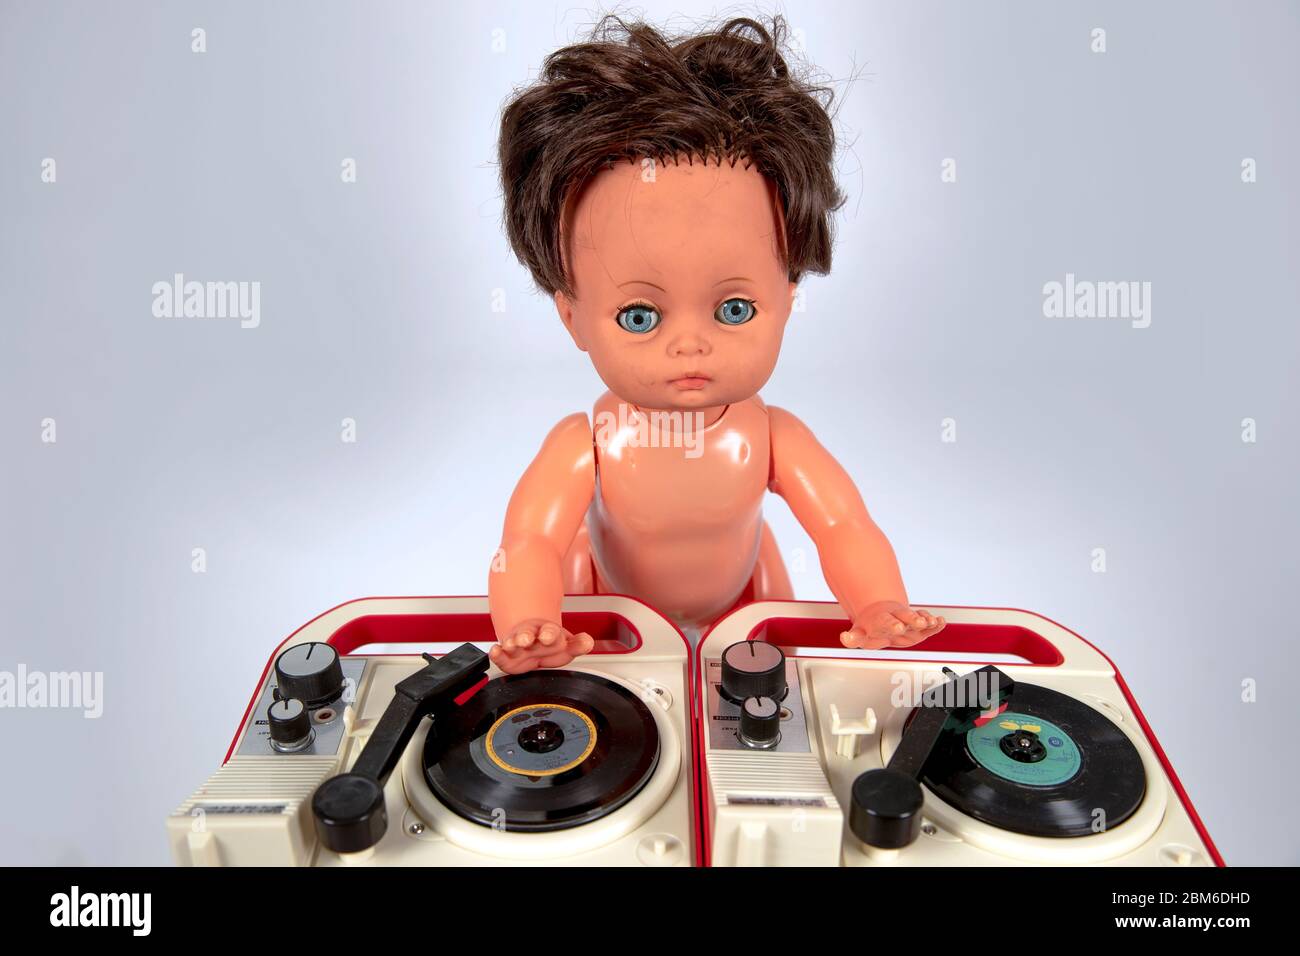 Spielzeug Kunststoff Puppe DJ spielen Vinyl auf den Decks Stockfotografie -  Alamy